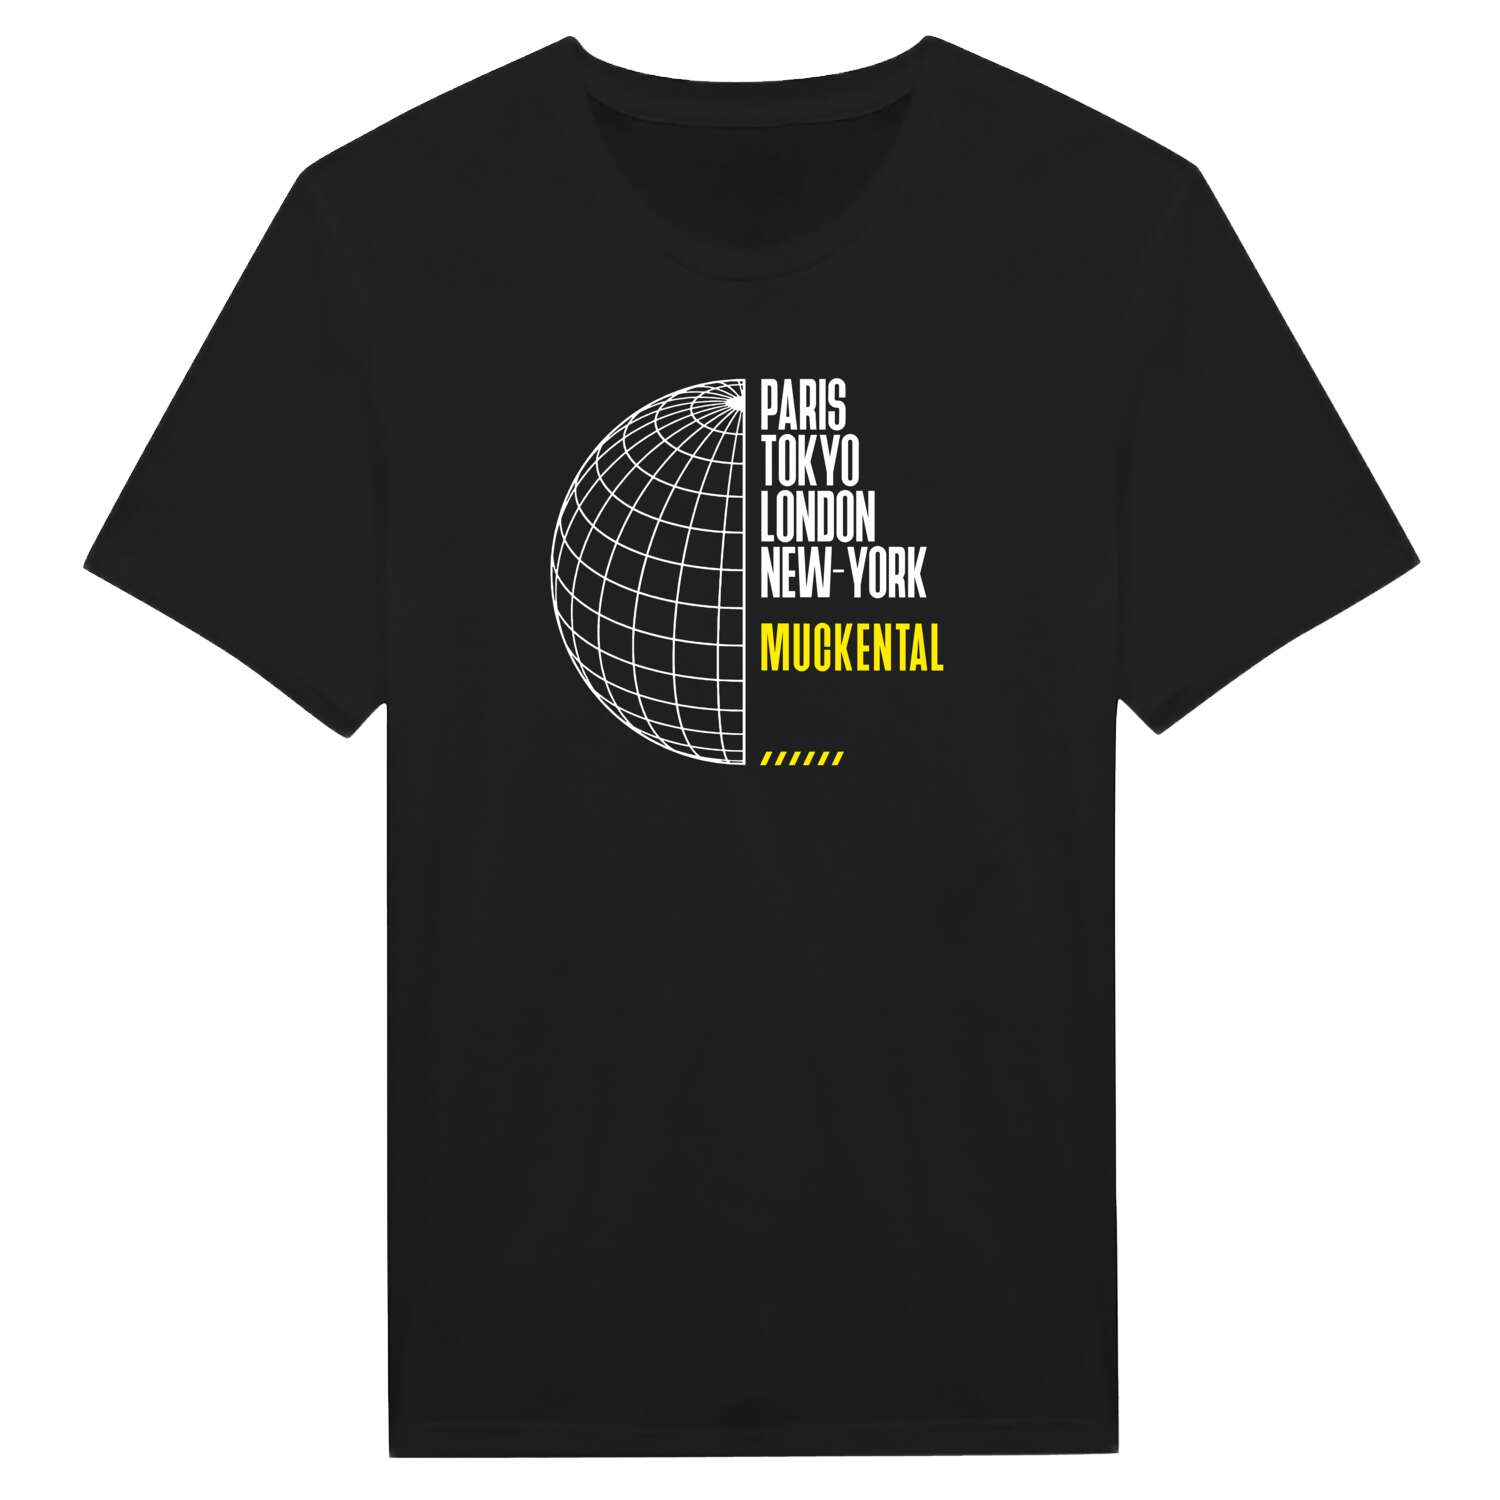 Muckental T-Shirt »Paris Tokyo London«